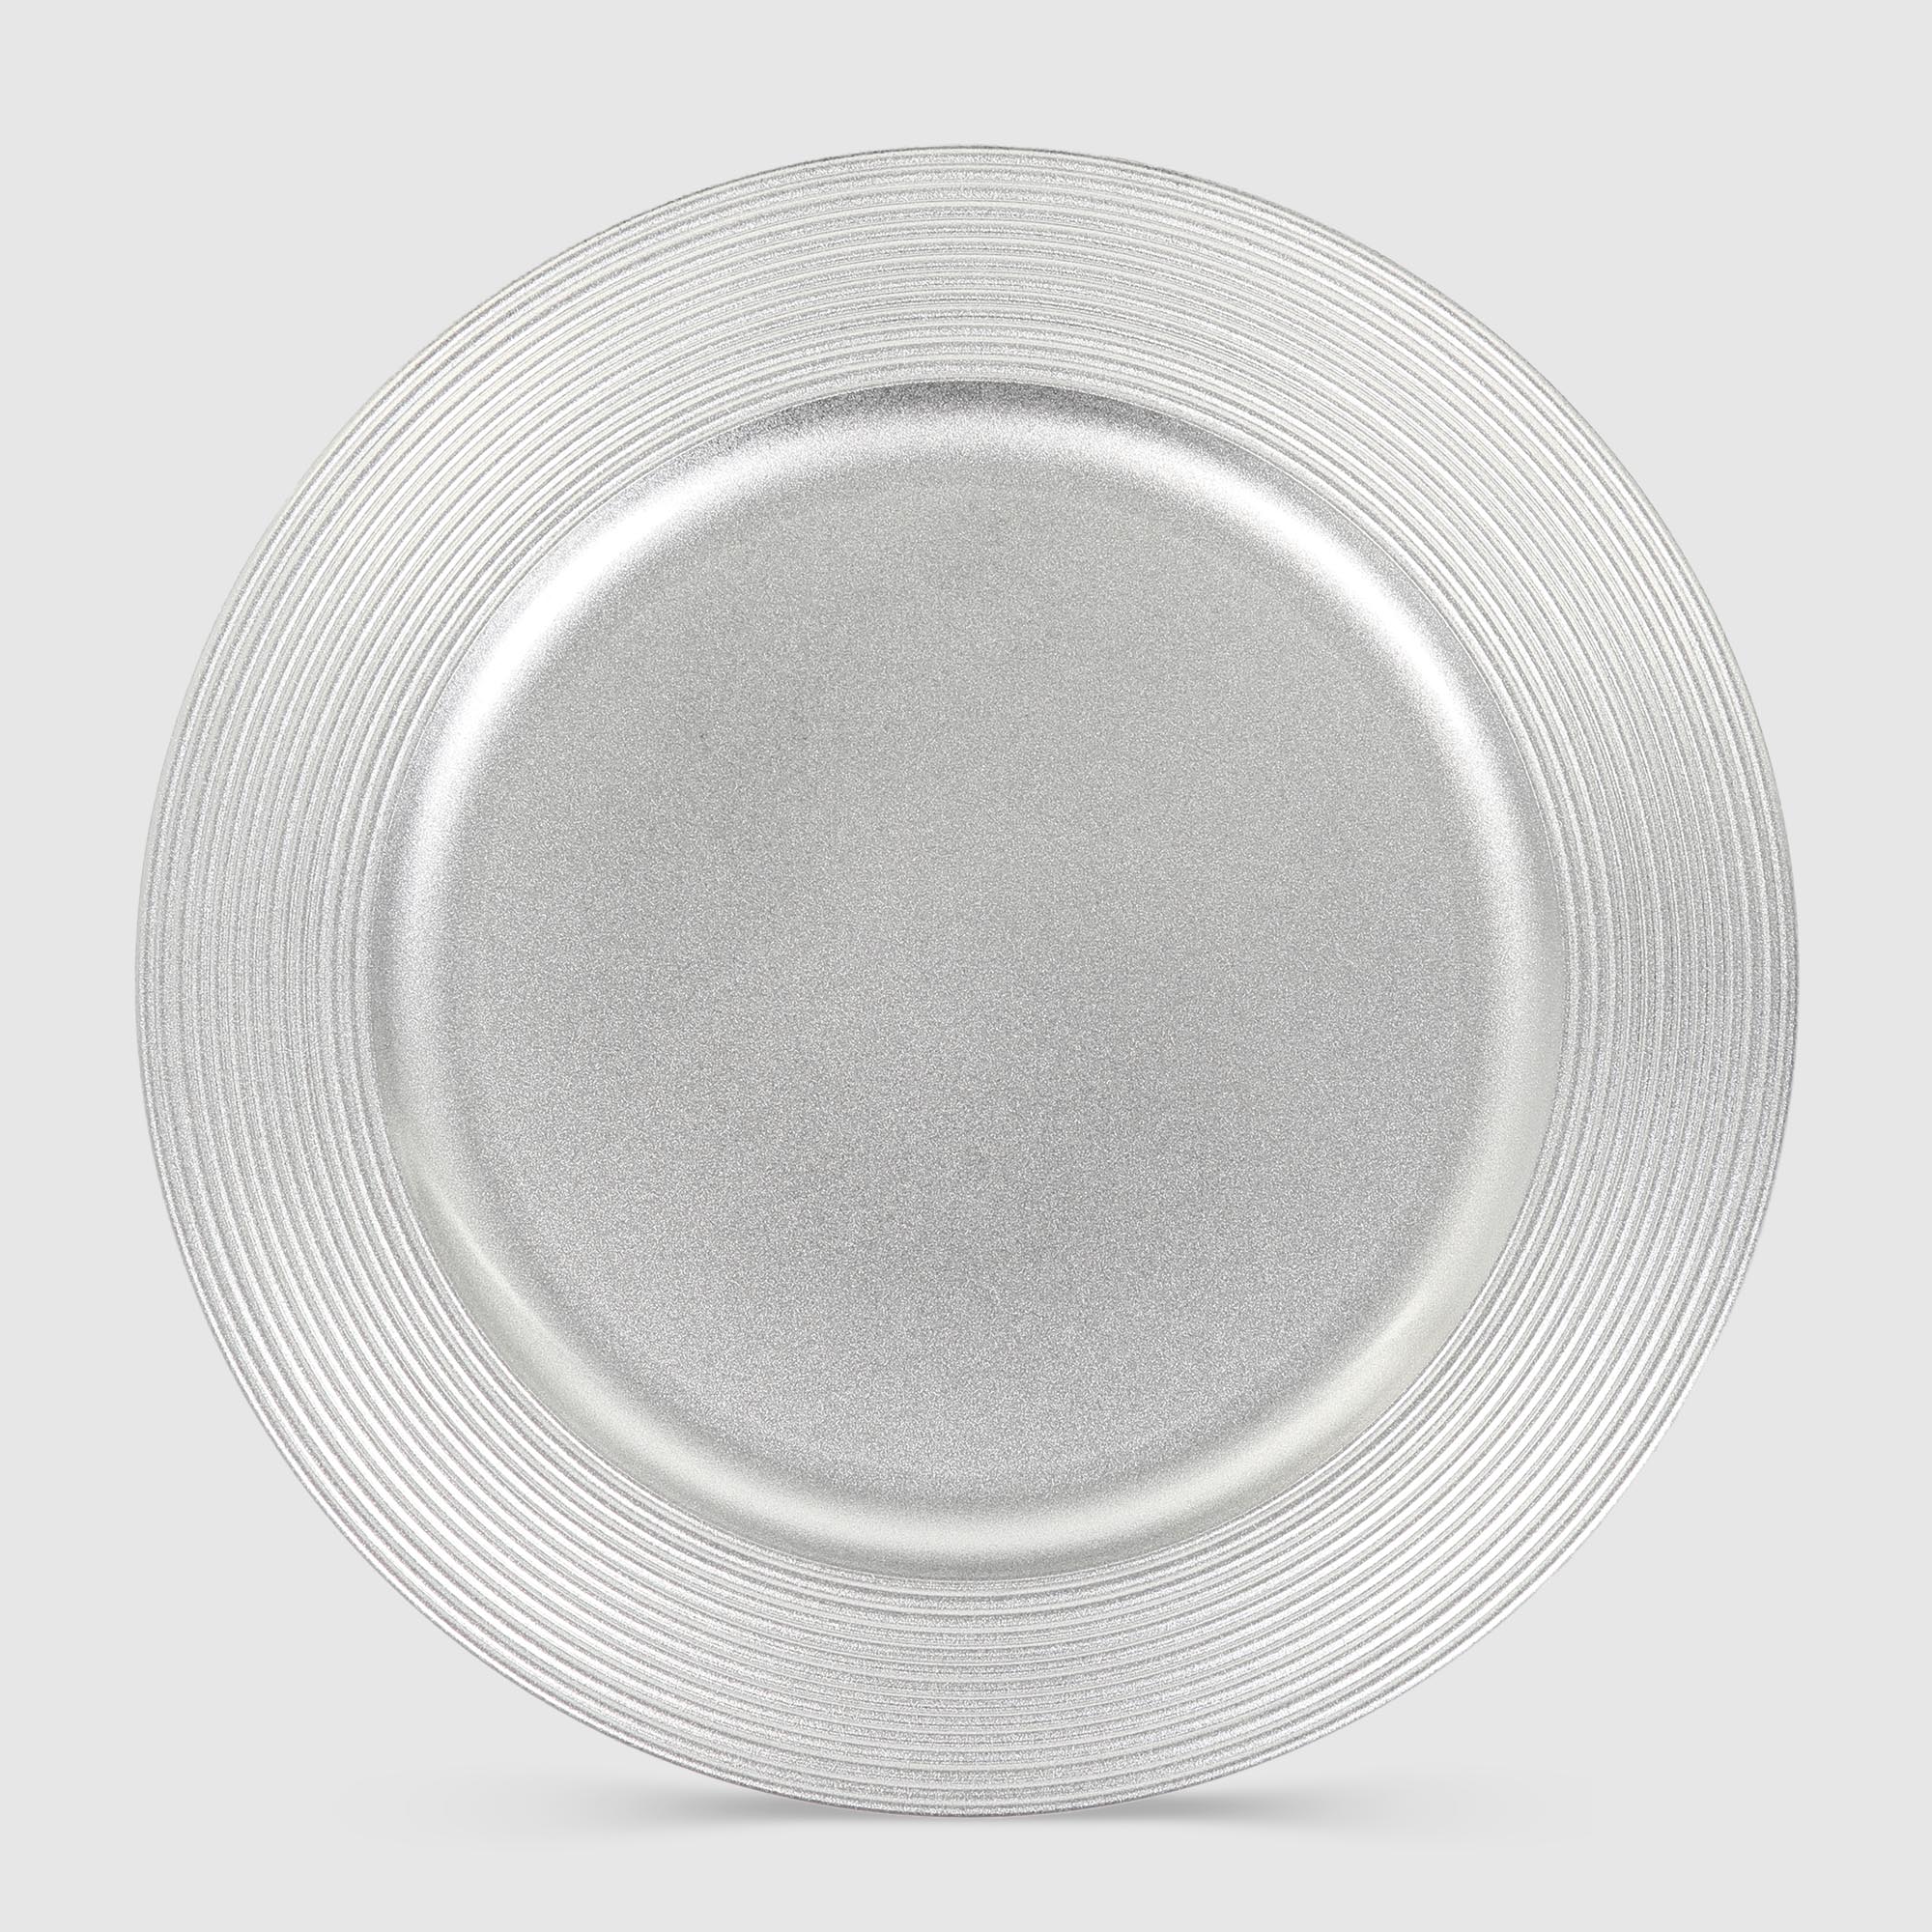 Подставка под горячее Mercury Tableware Circle серебро 33 см подставка под горячее mercury tableware circle серебро 33 см